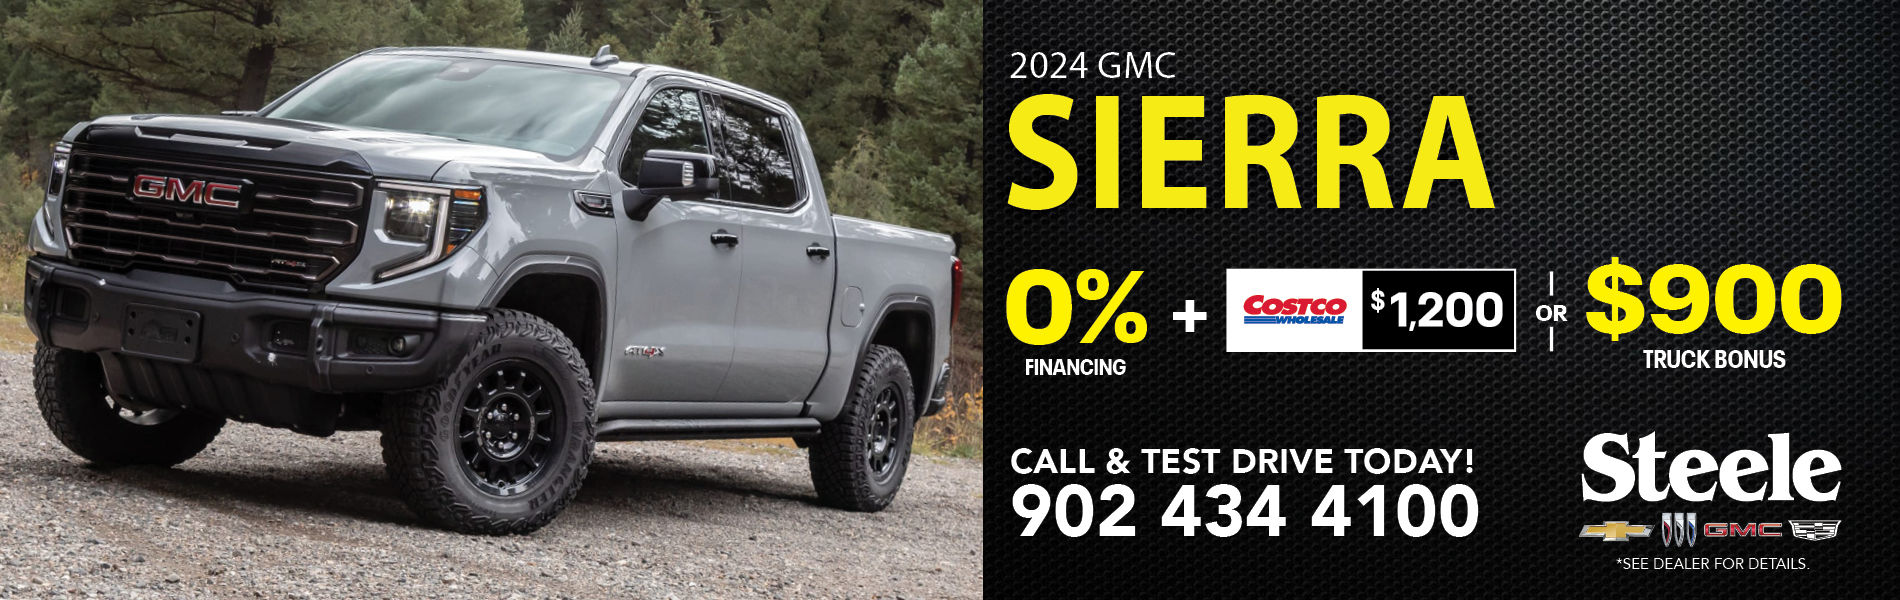 2024 GMC Sierra